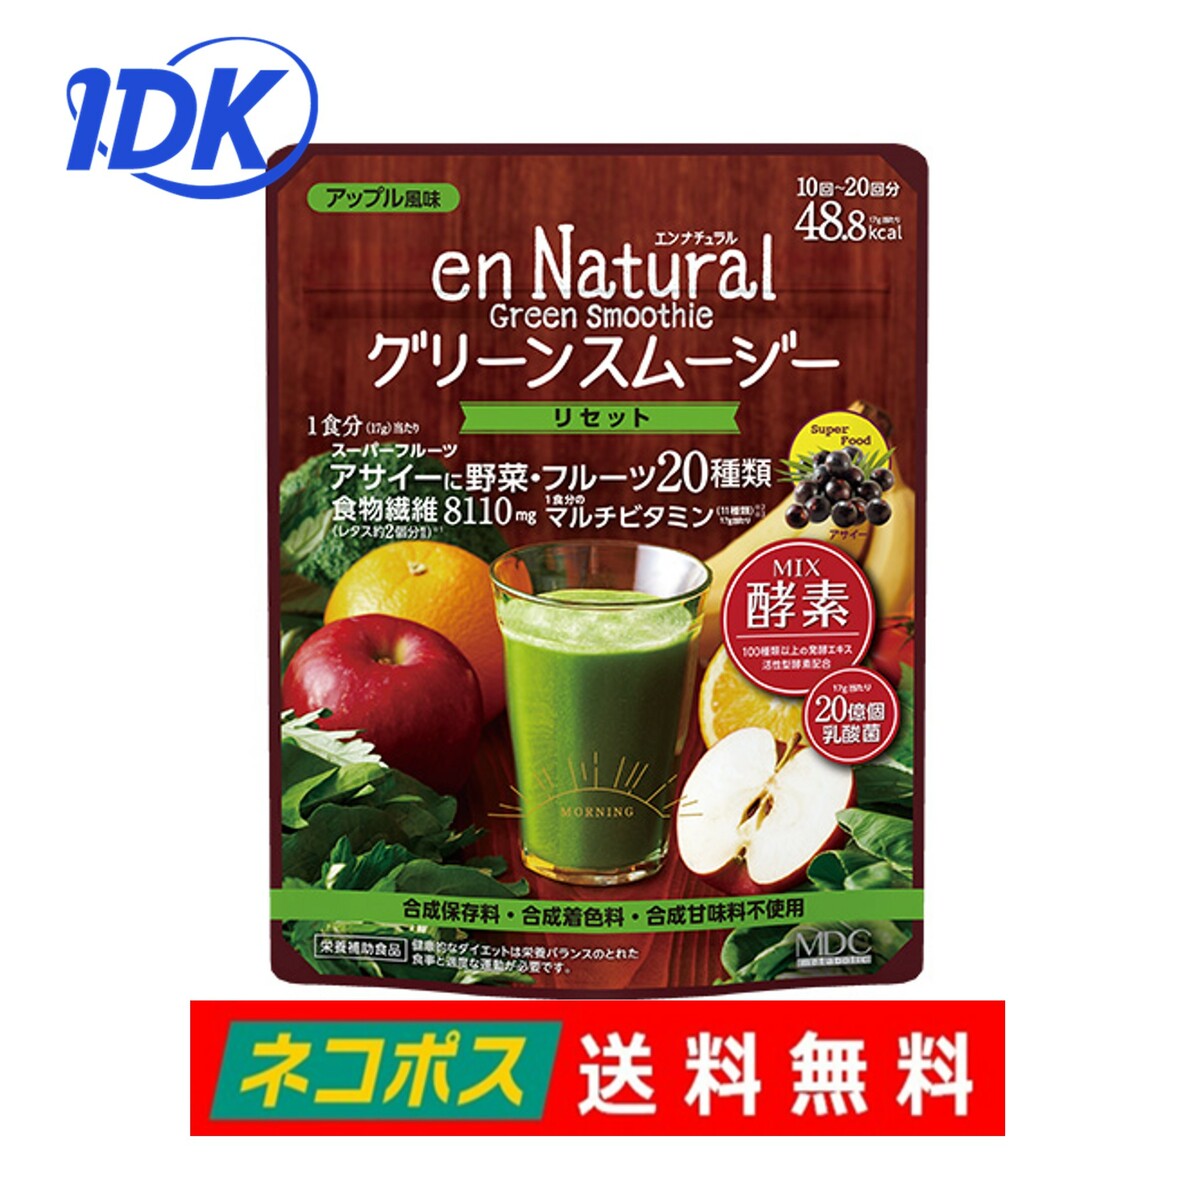 【送料無料】エンナチュラル グリーンスムージー 170g アップル風味 11種類のマルチビタミン 乳 ...